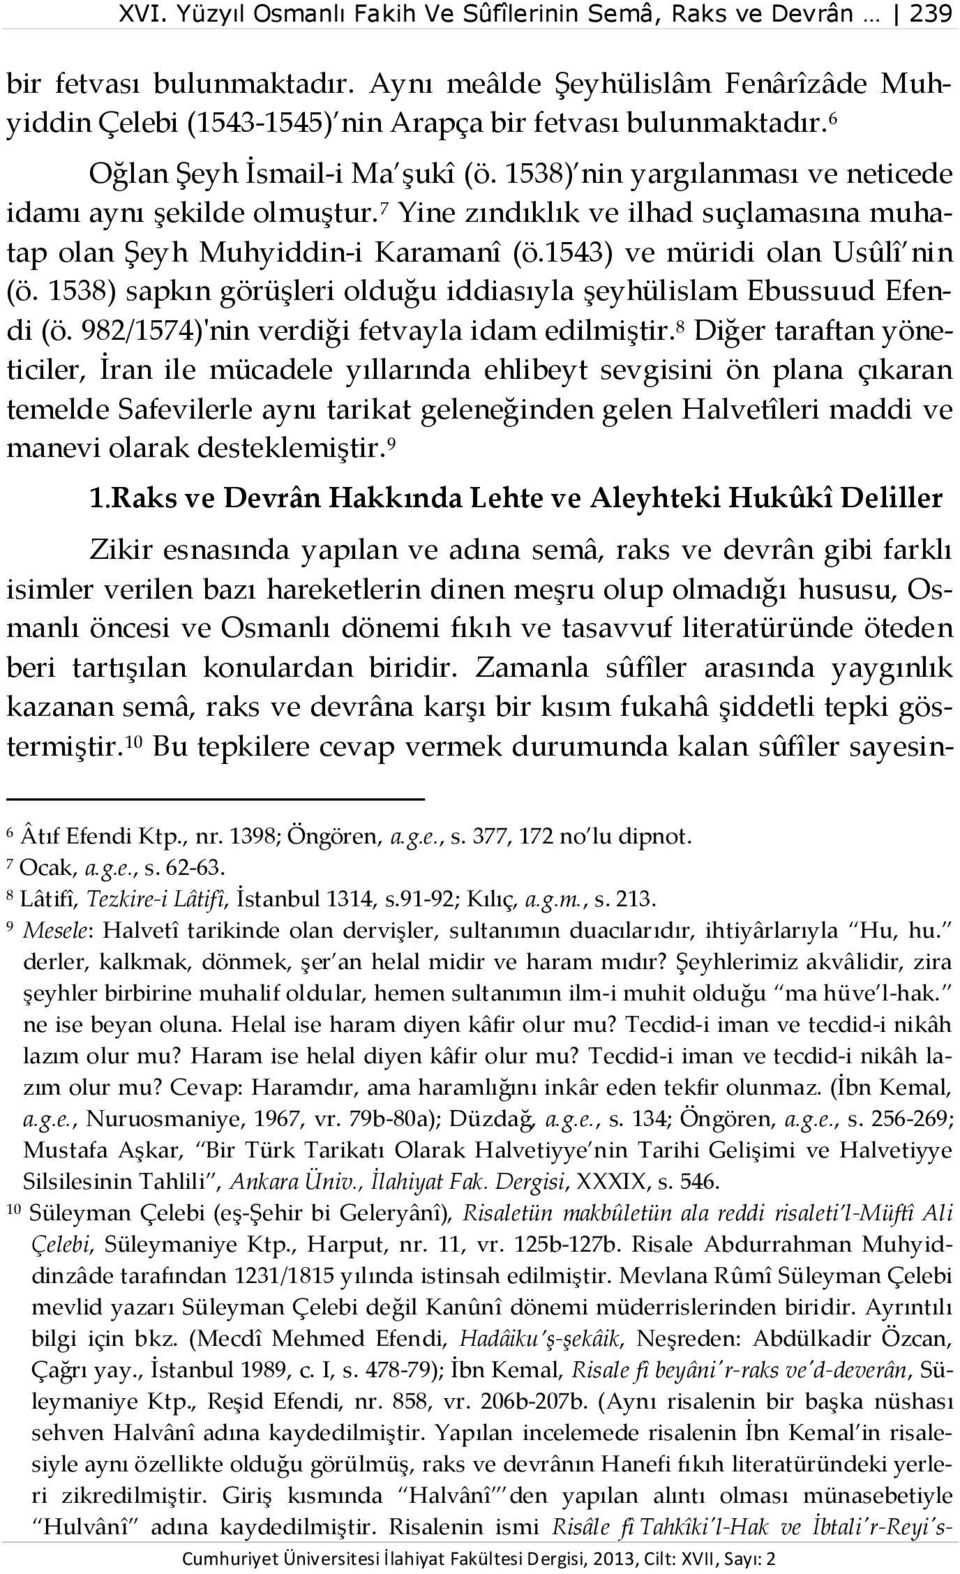 1543) ve müridi olan Usûlî nin (ö. 1538) sapkın görüşleri olduğu iddiasıyla şeyhülislam Ebussuud Efendi (ö. 982/1574)'nin verdiği fetvayla idam edilmiştir.